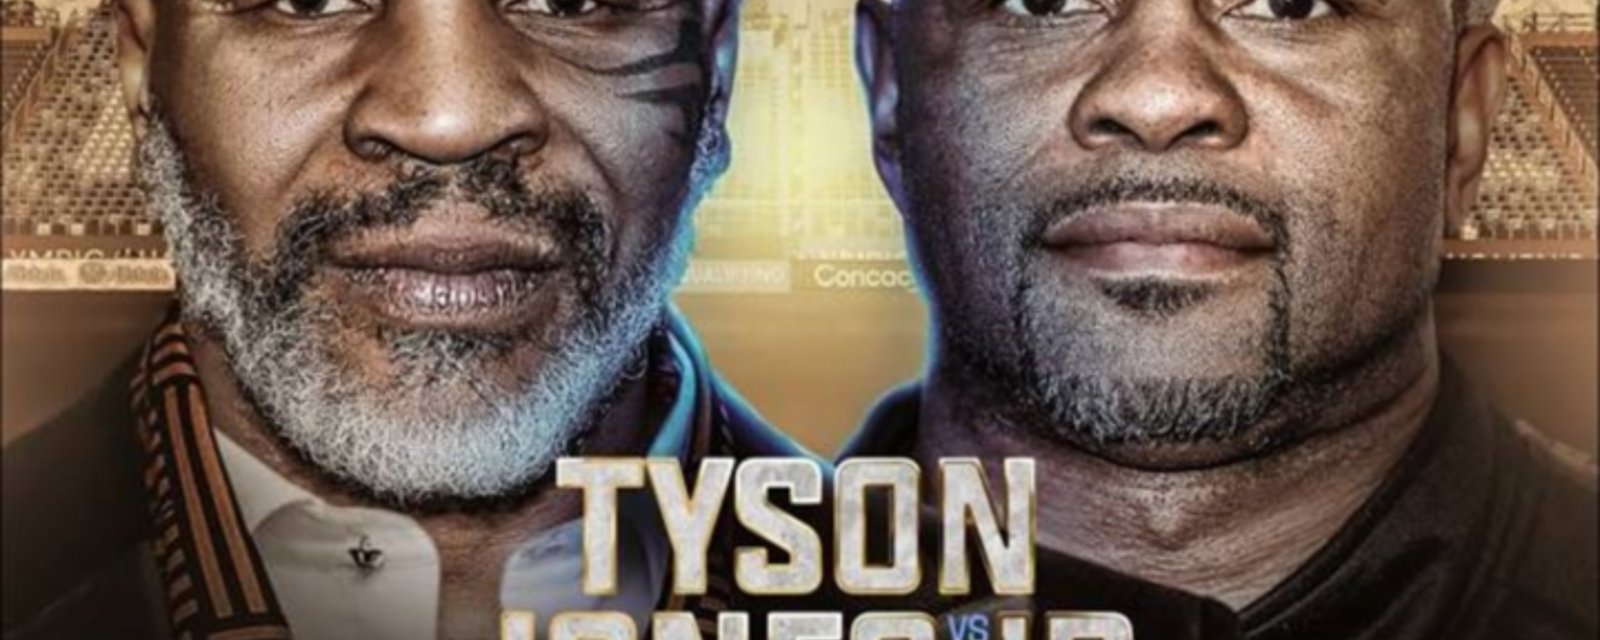 Les KO's seront interdits durant le combat entre Mike Tyson et Roy Jones Jr